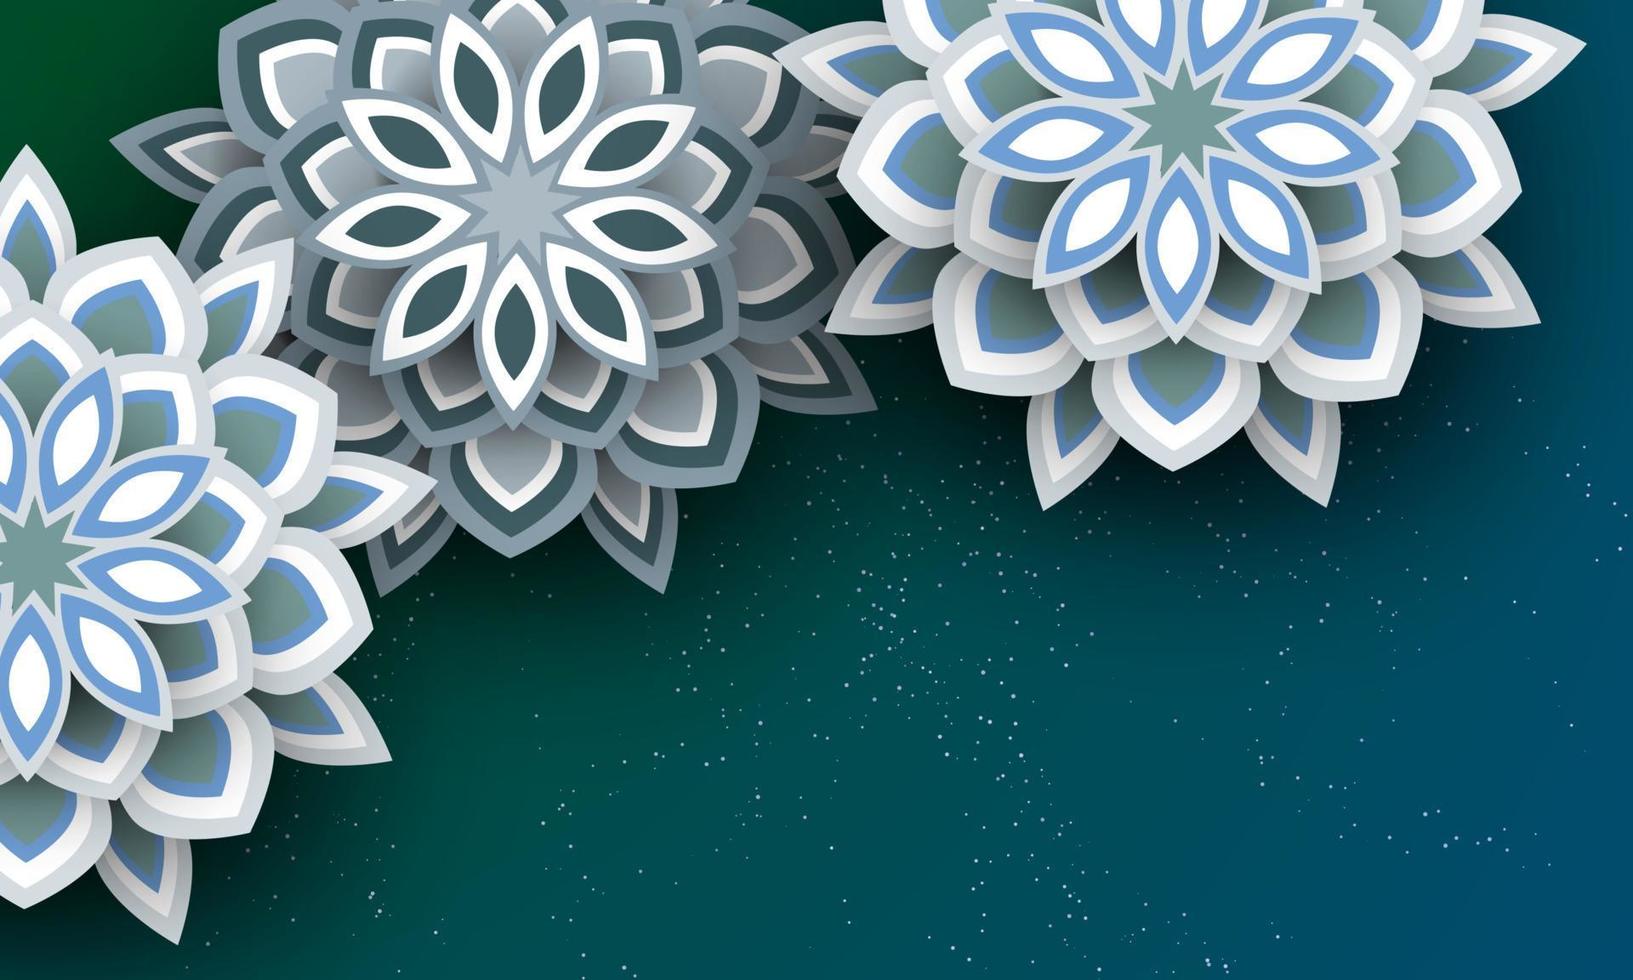 design per le vacanze del festival di diwali con stile taglio carta di rangoli e fiori indiani. illustrazione vettoriale. vettore